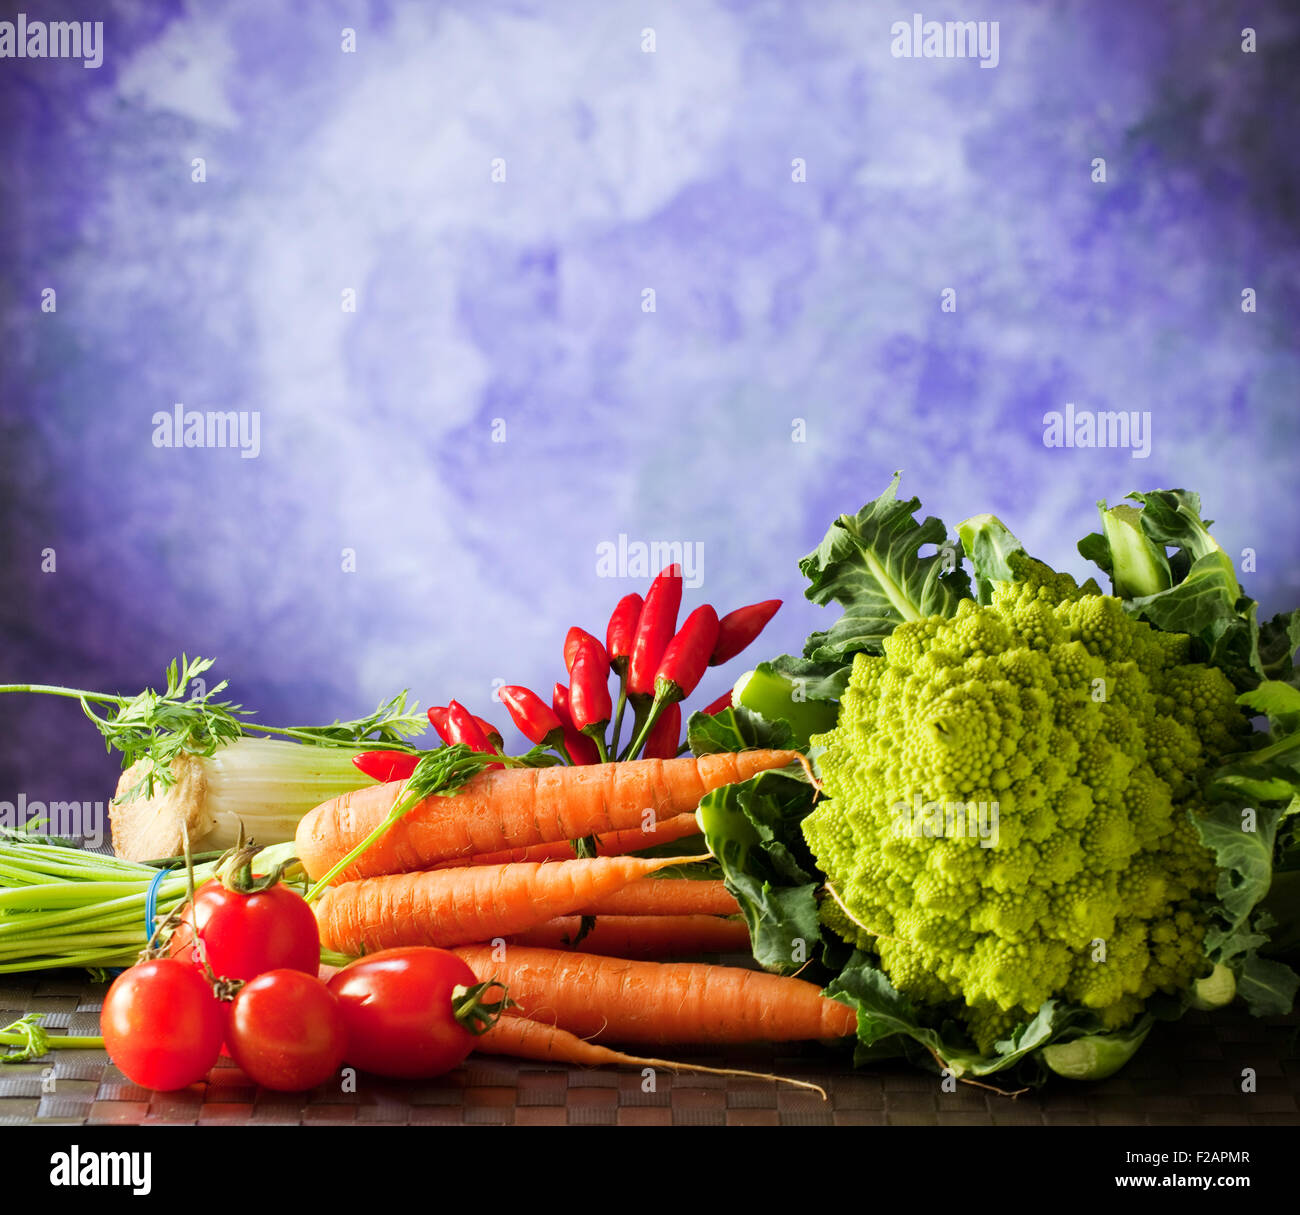 Cavolo romano, carote, pomodori e altri ortaggi su sfondo viola Foto Stock